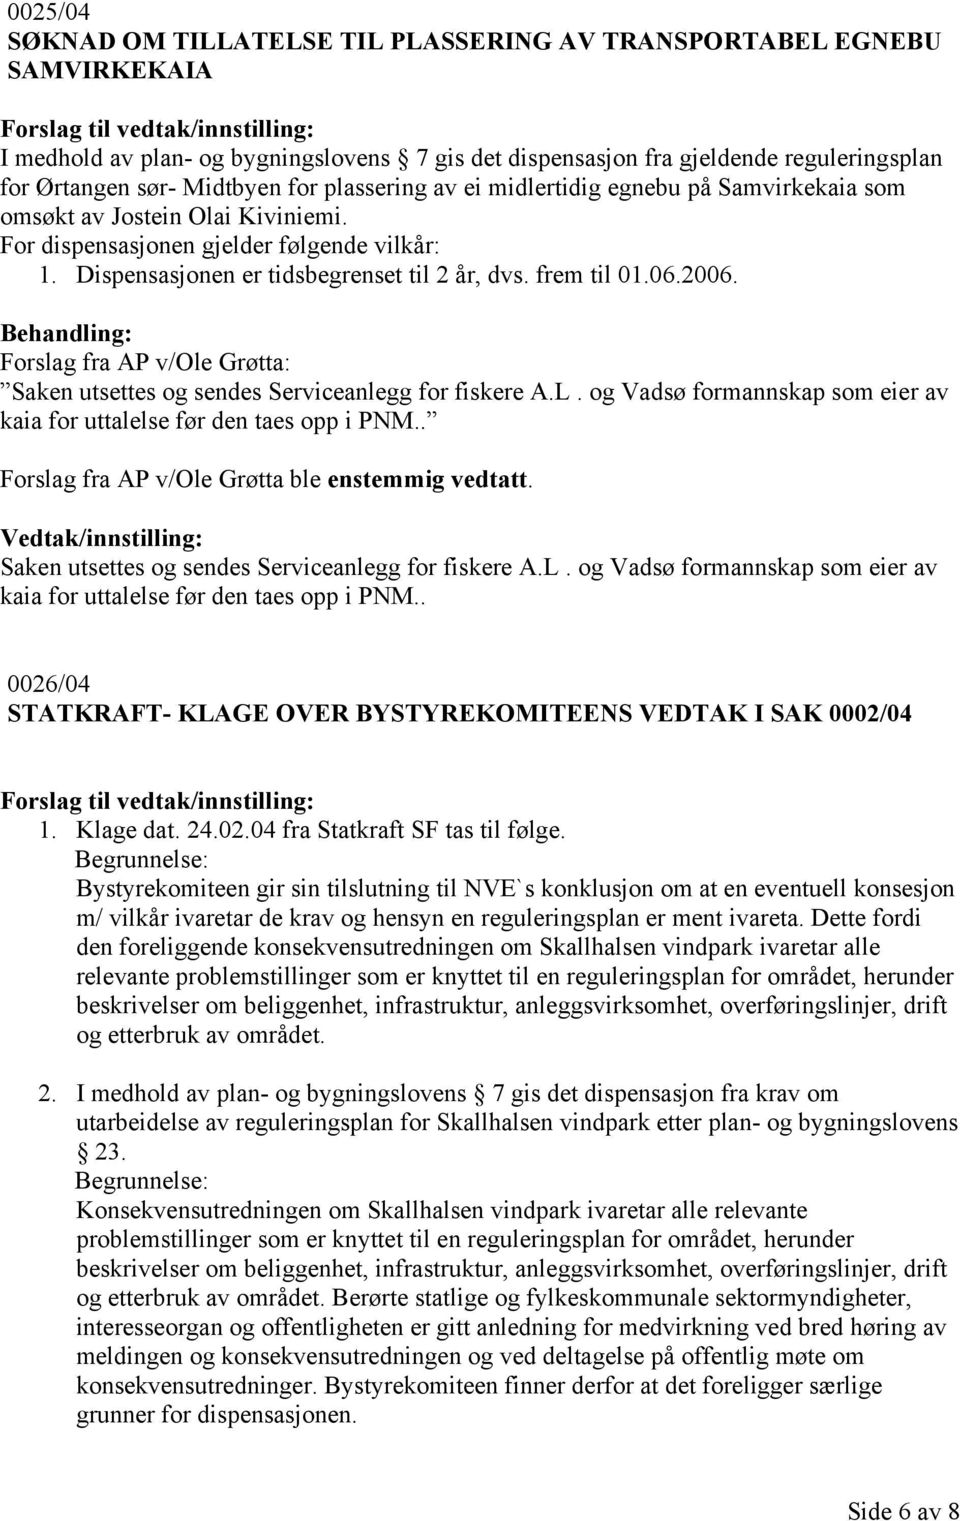 06.2006. Forslag fra AP v/ole Grøtta: Saken utsettes og sendes Serviceanlegg for fiskere A.L. og Vadsø formannskap som eier av kaia for uttalelse før den taes opp i PNM.